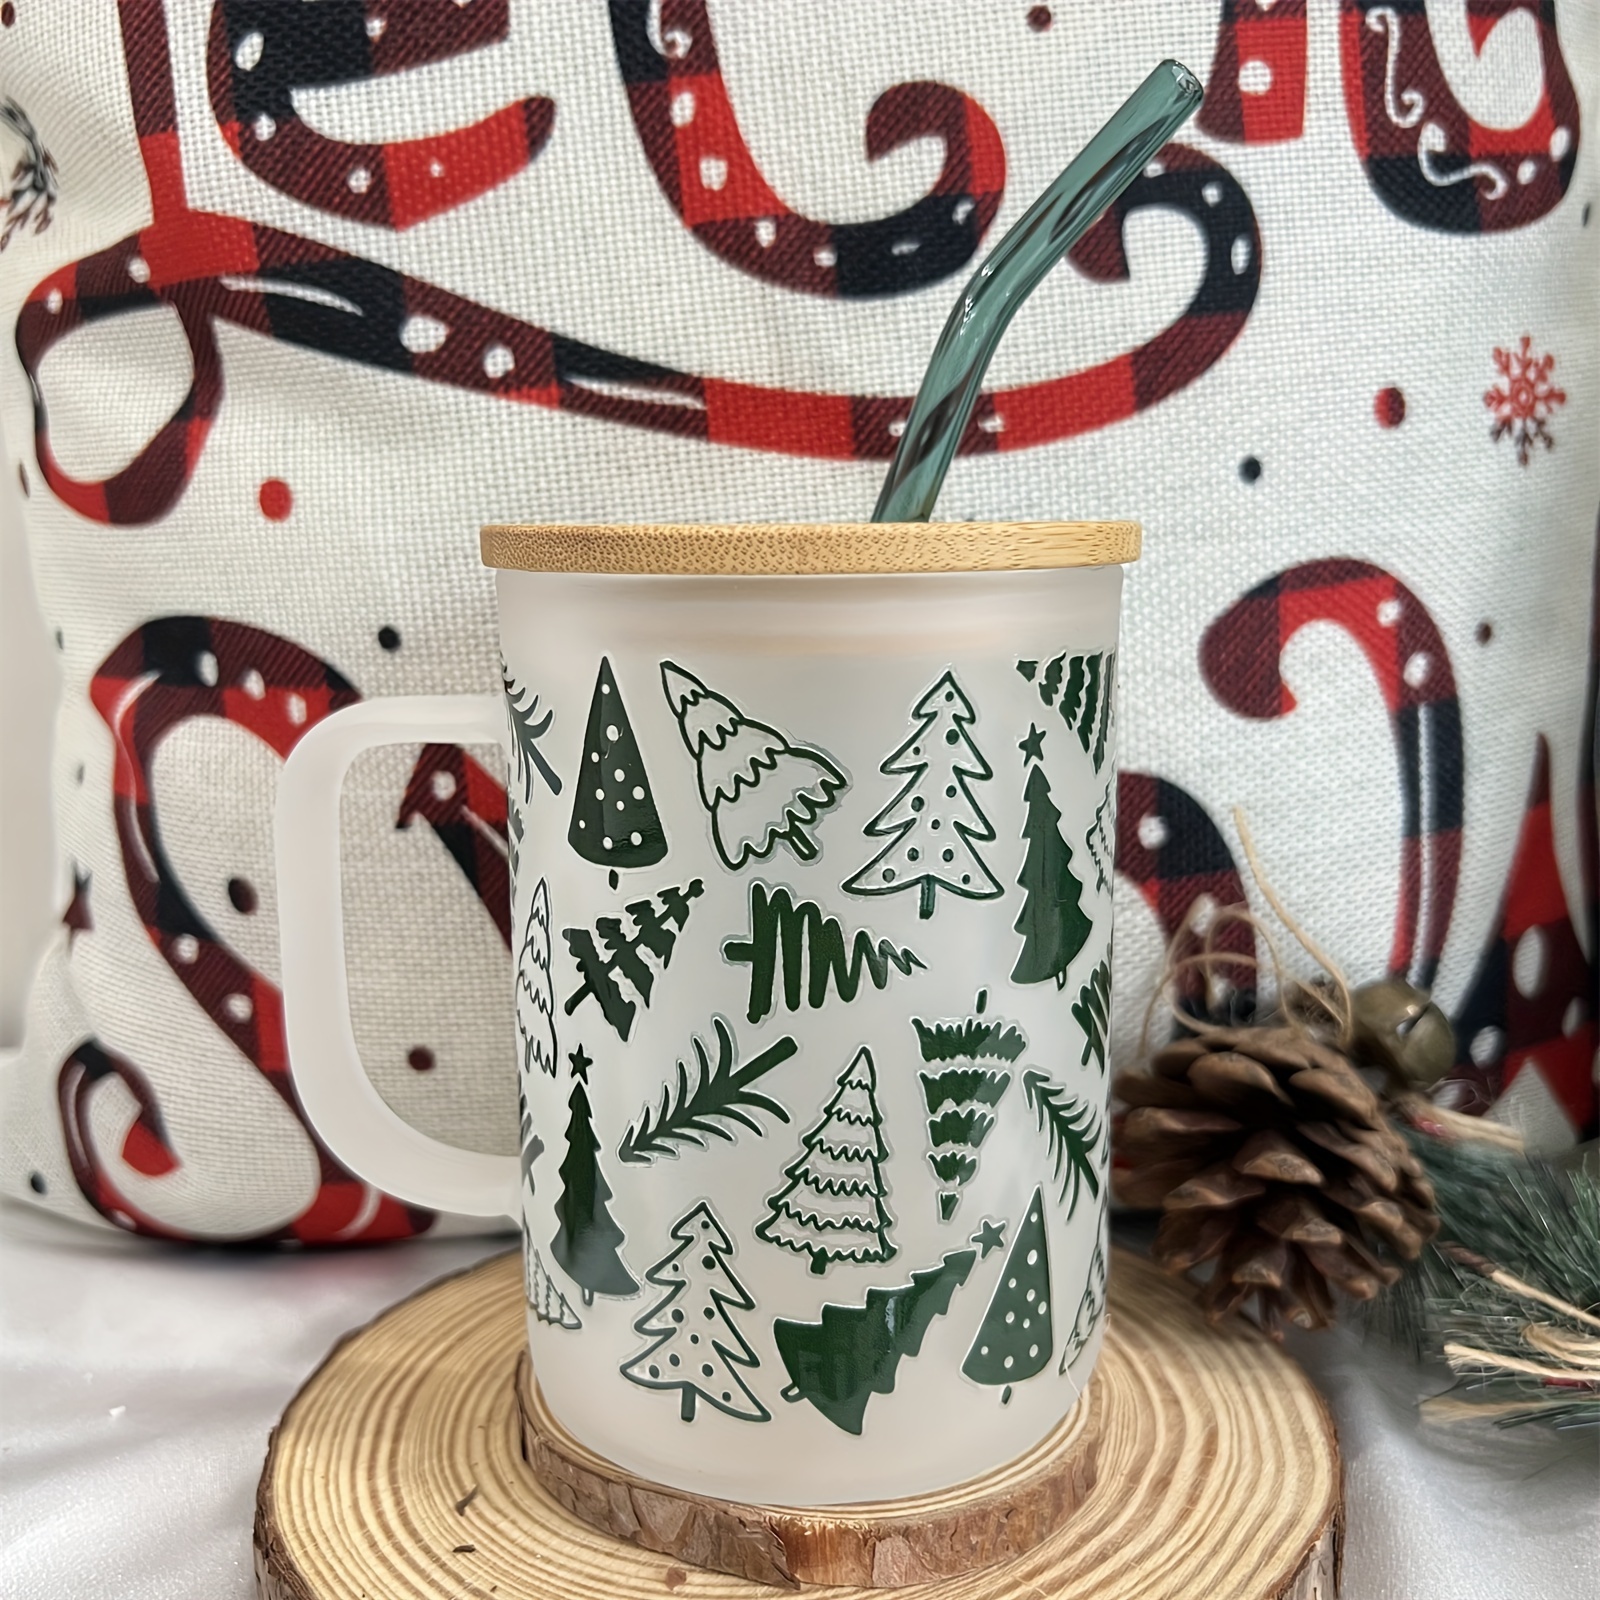 Buy Transparent Christmas Glass Mug with Green Handle